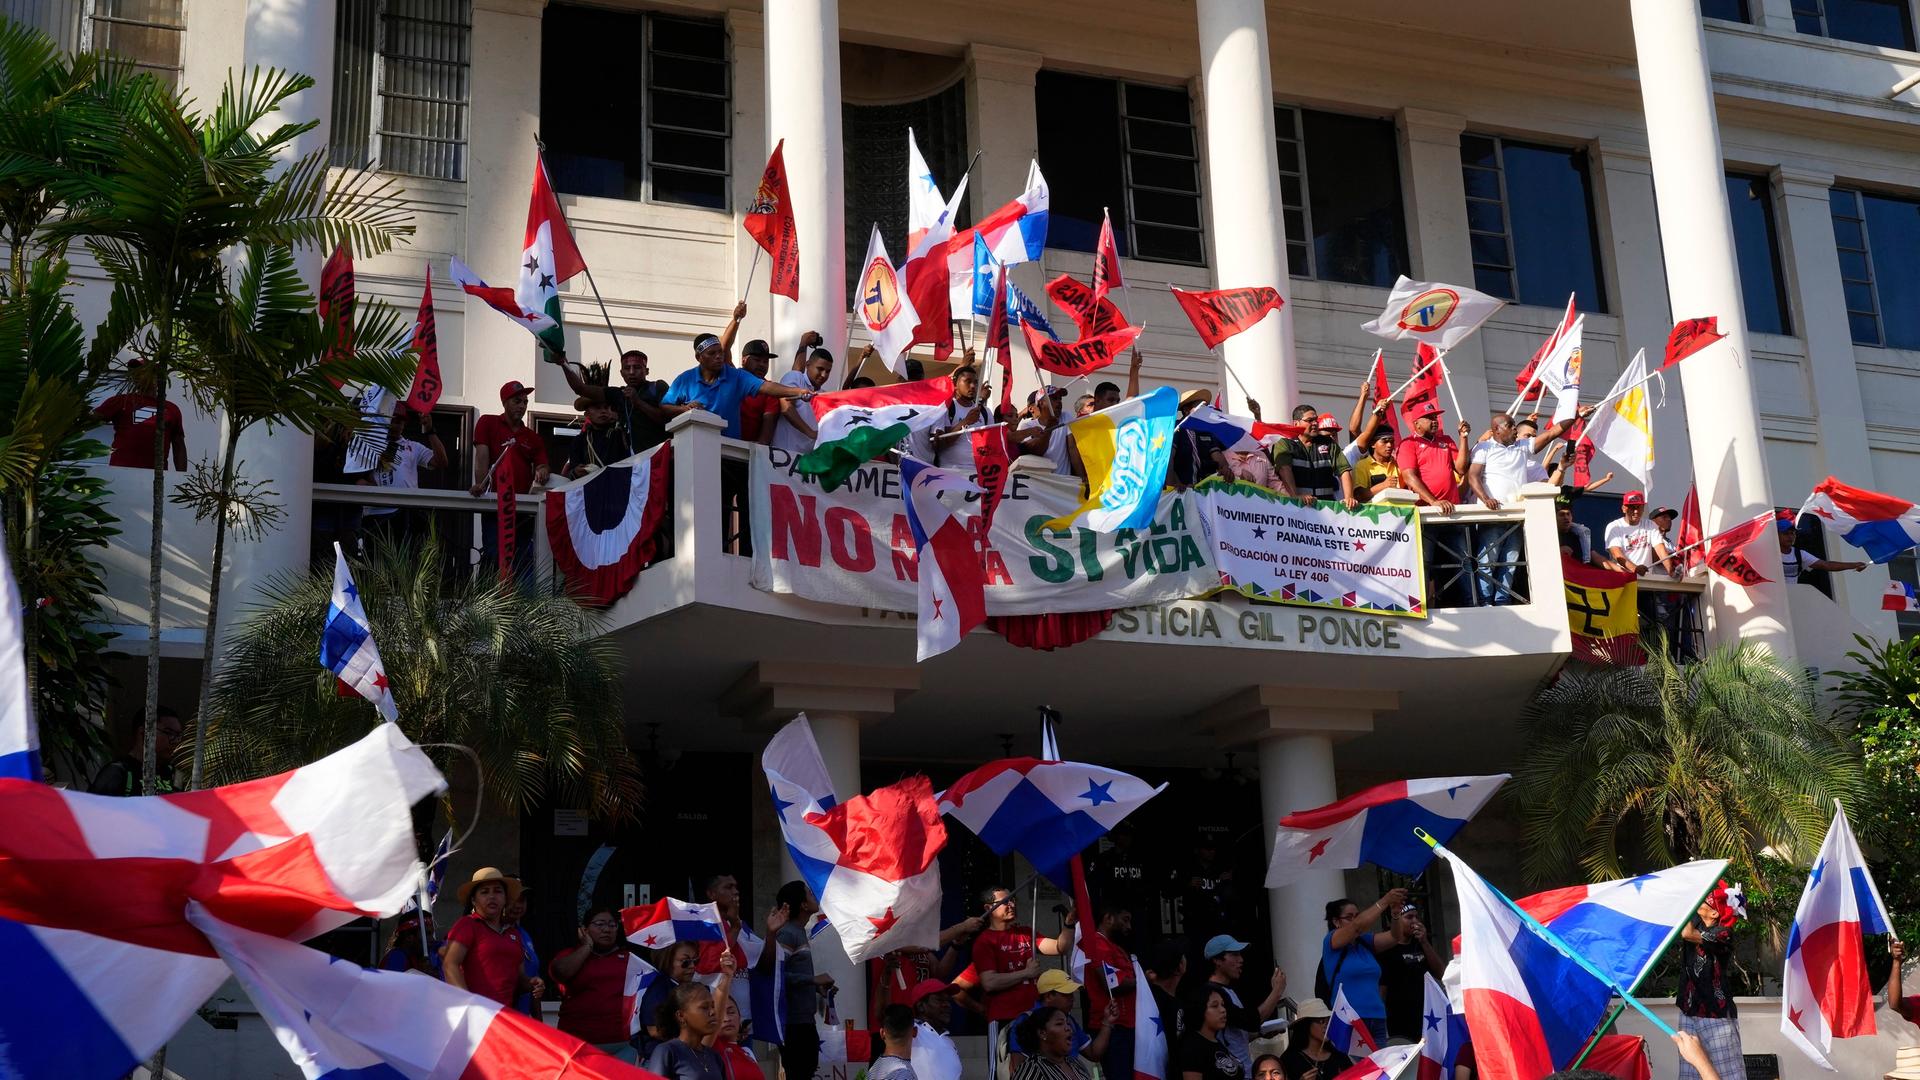 Zu sehen sind Demonstranten vor einem Haus in Panama-Stadt, die Fahnen schwenken. Auf dem Balkon sind mehrere Transparente angebracht.